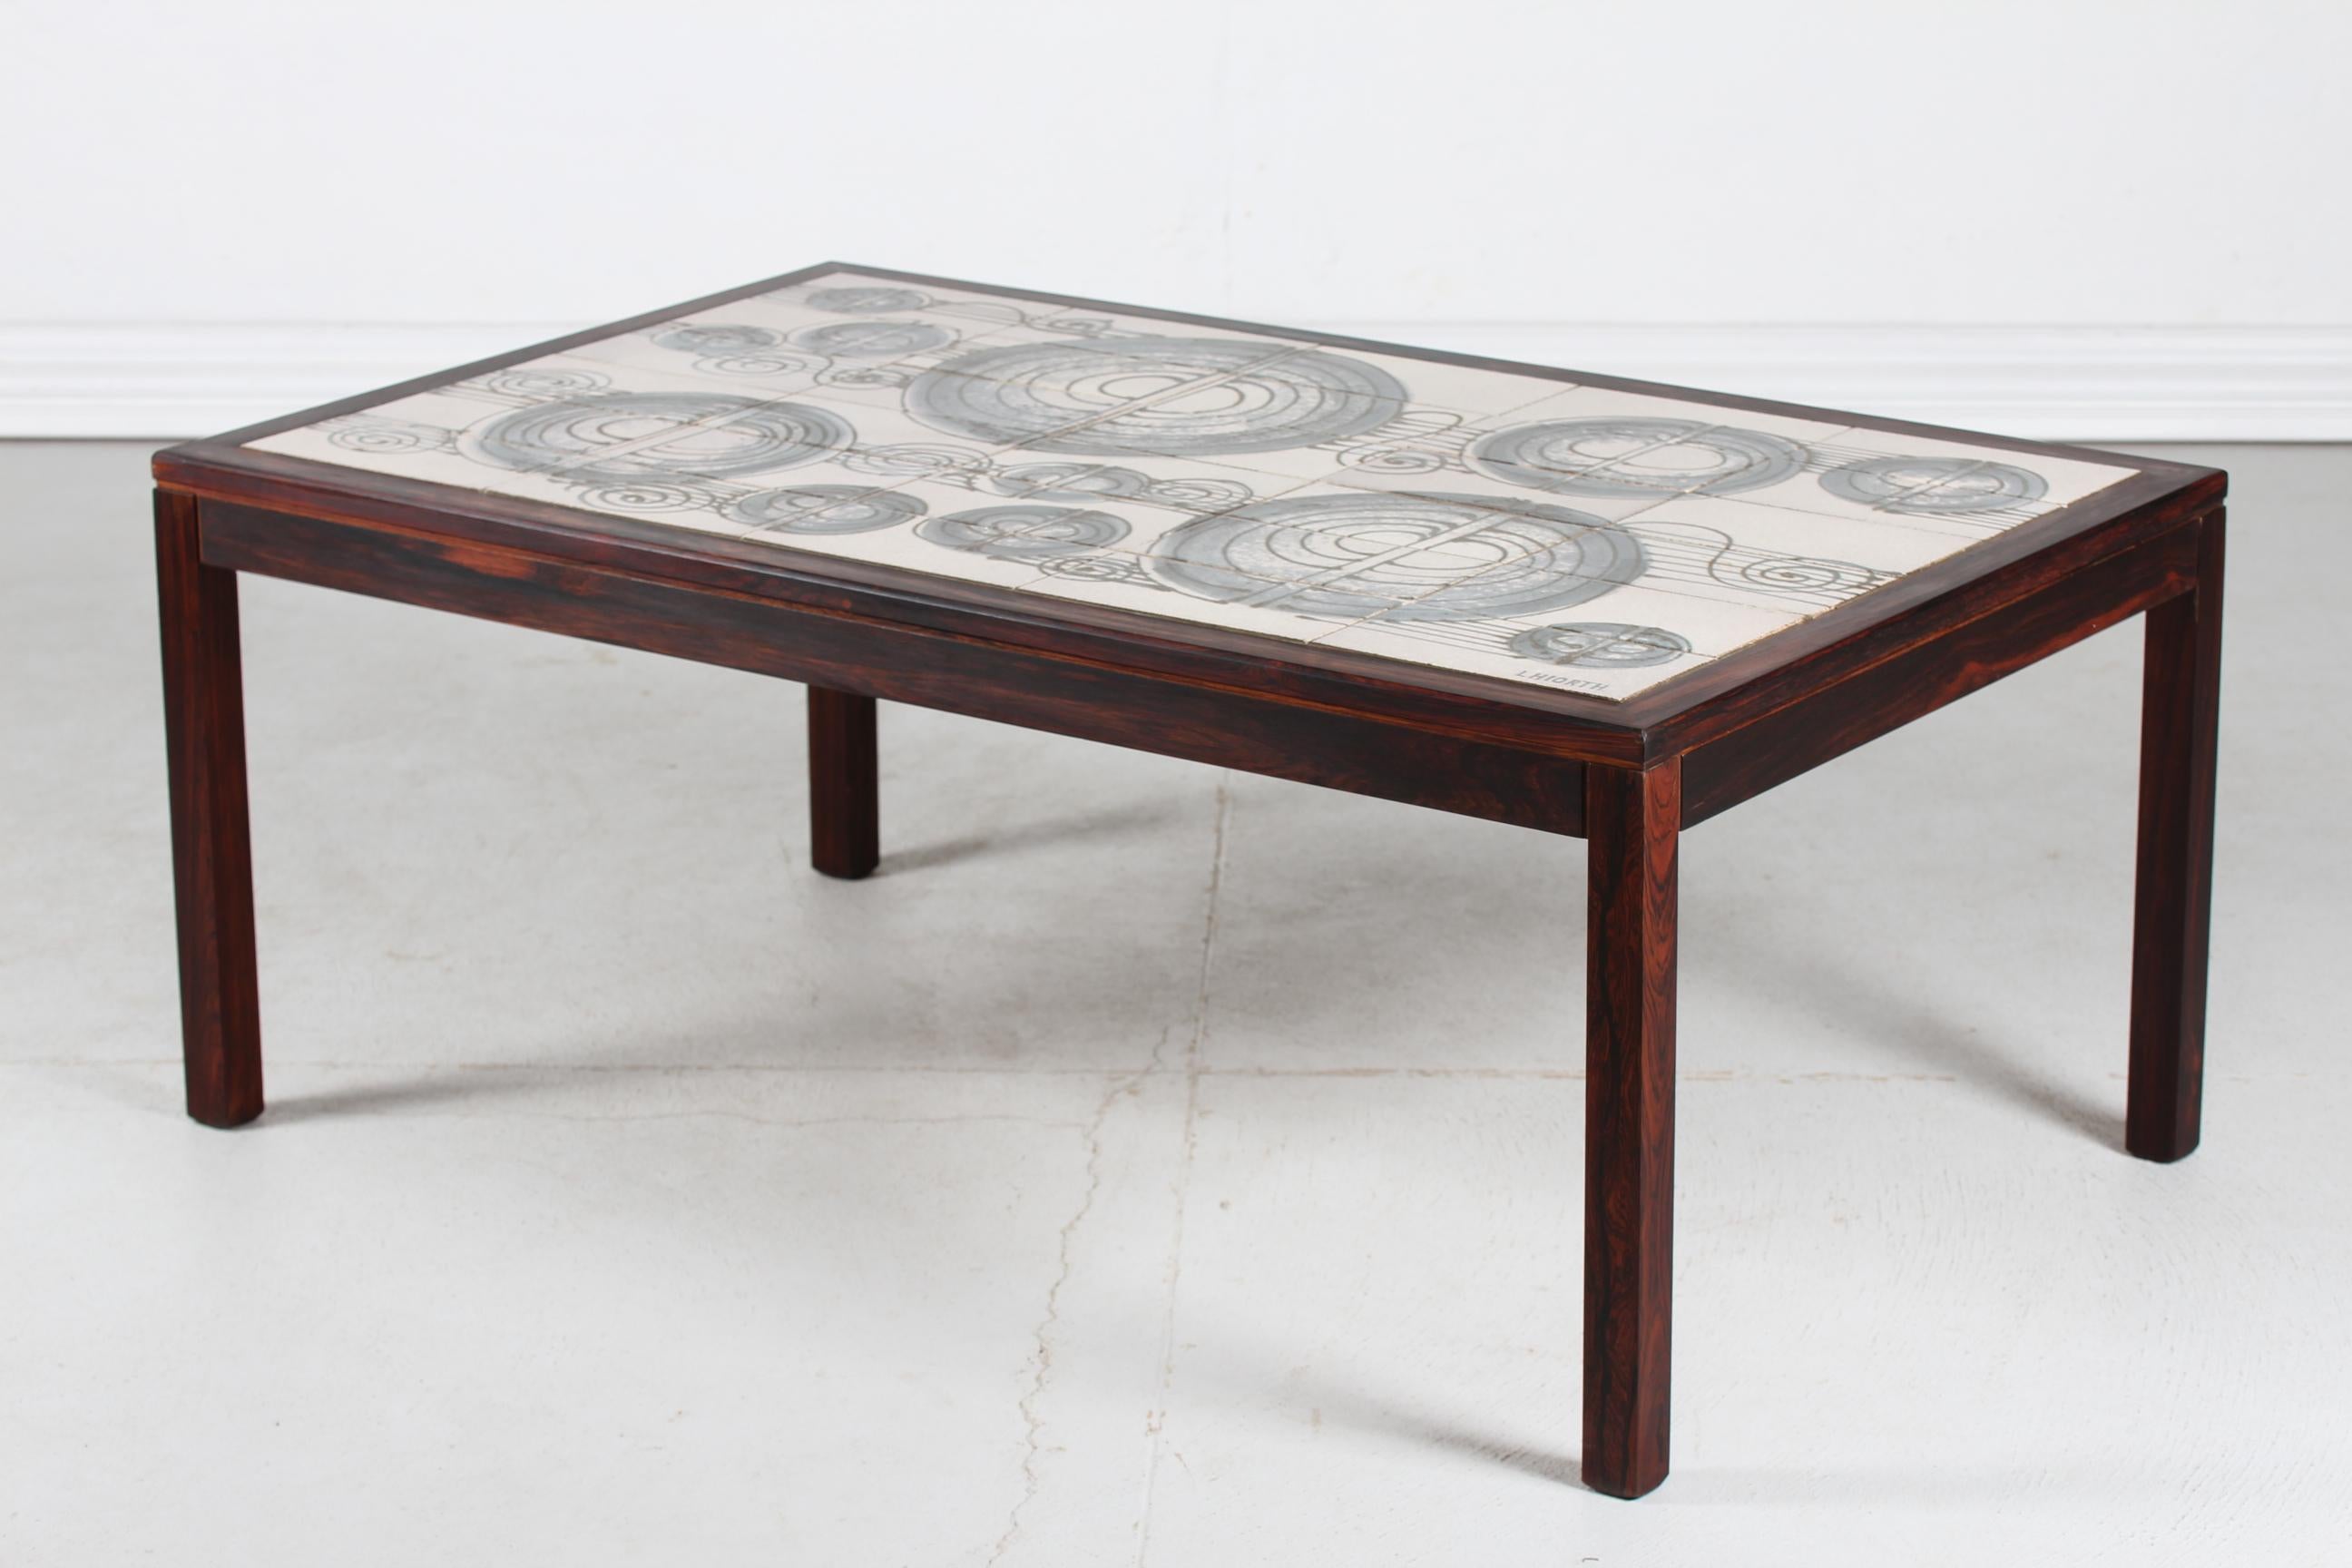 Table basse danoise du milieu du siècle en bois foncé avec des carreaux de céramique incrustés du studio de céramique L. Hjorth. Fabriqué vers les années 1960.
Les carreaux présentent un décor abstrait peint à la main en marron et bleu sur fond